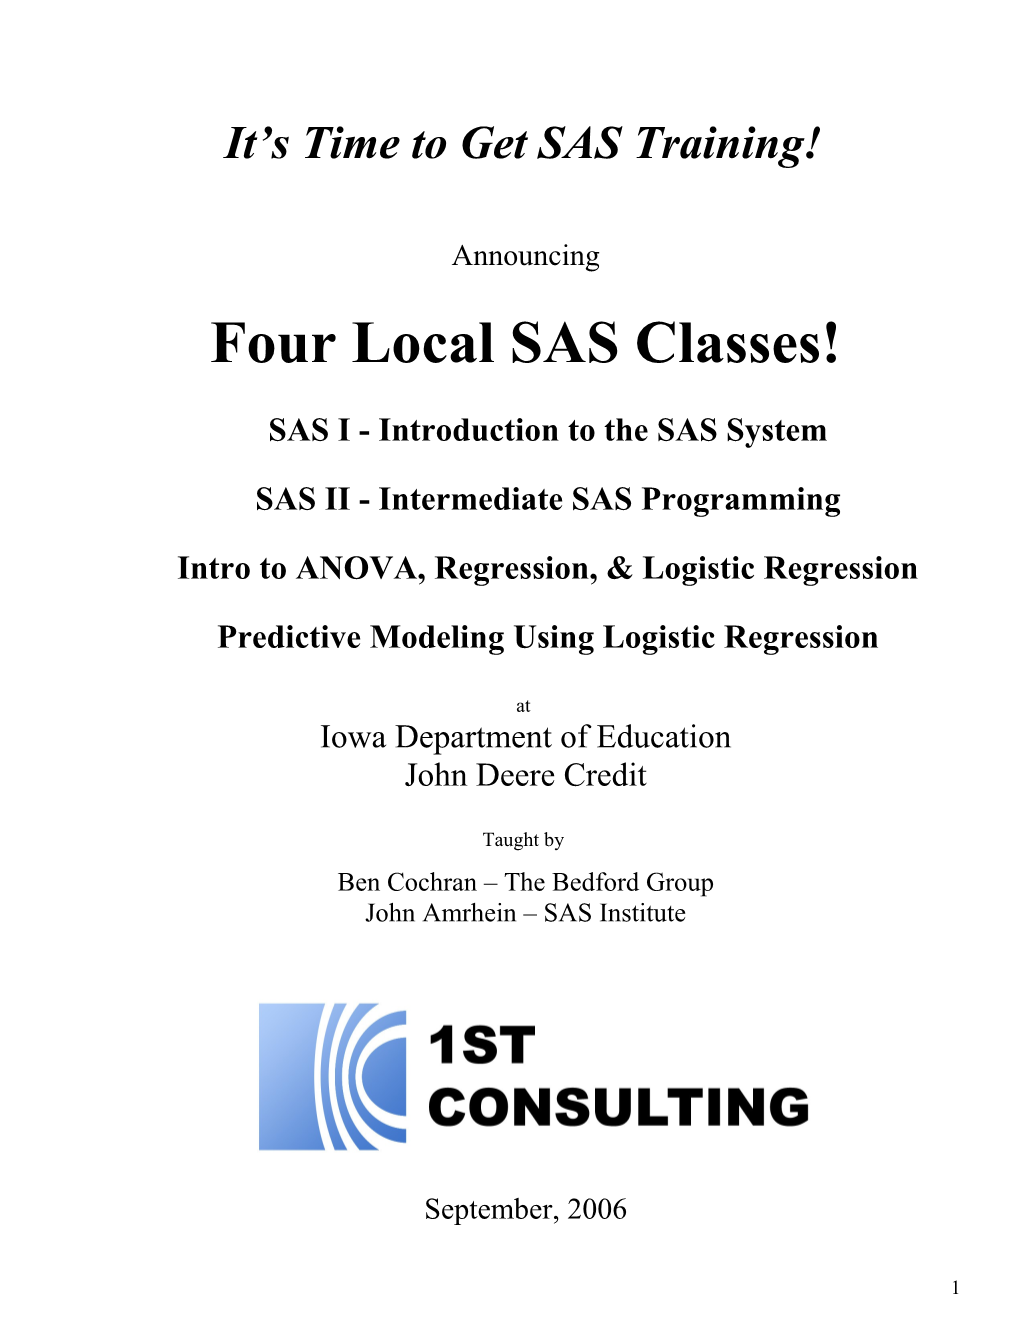 SAS Training Class